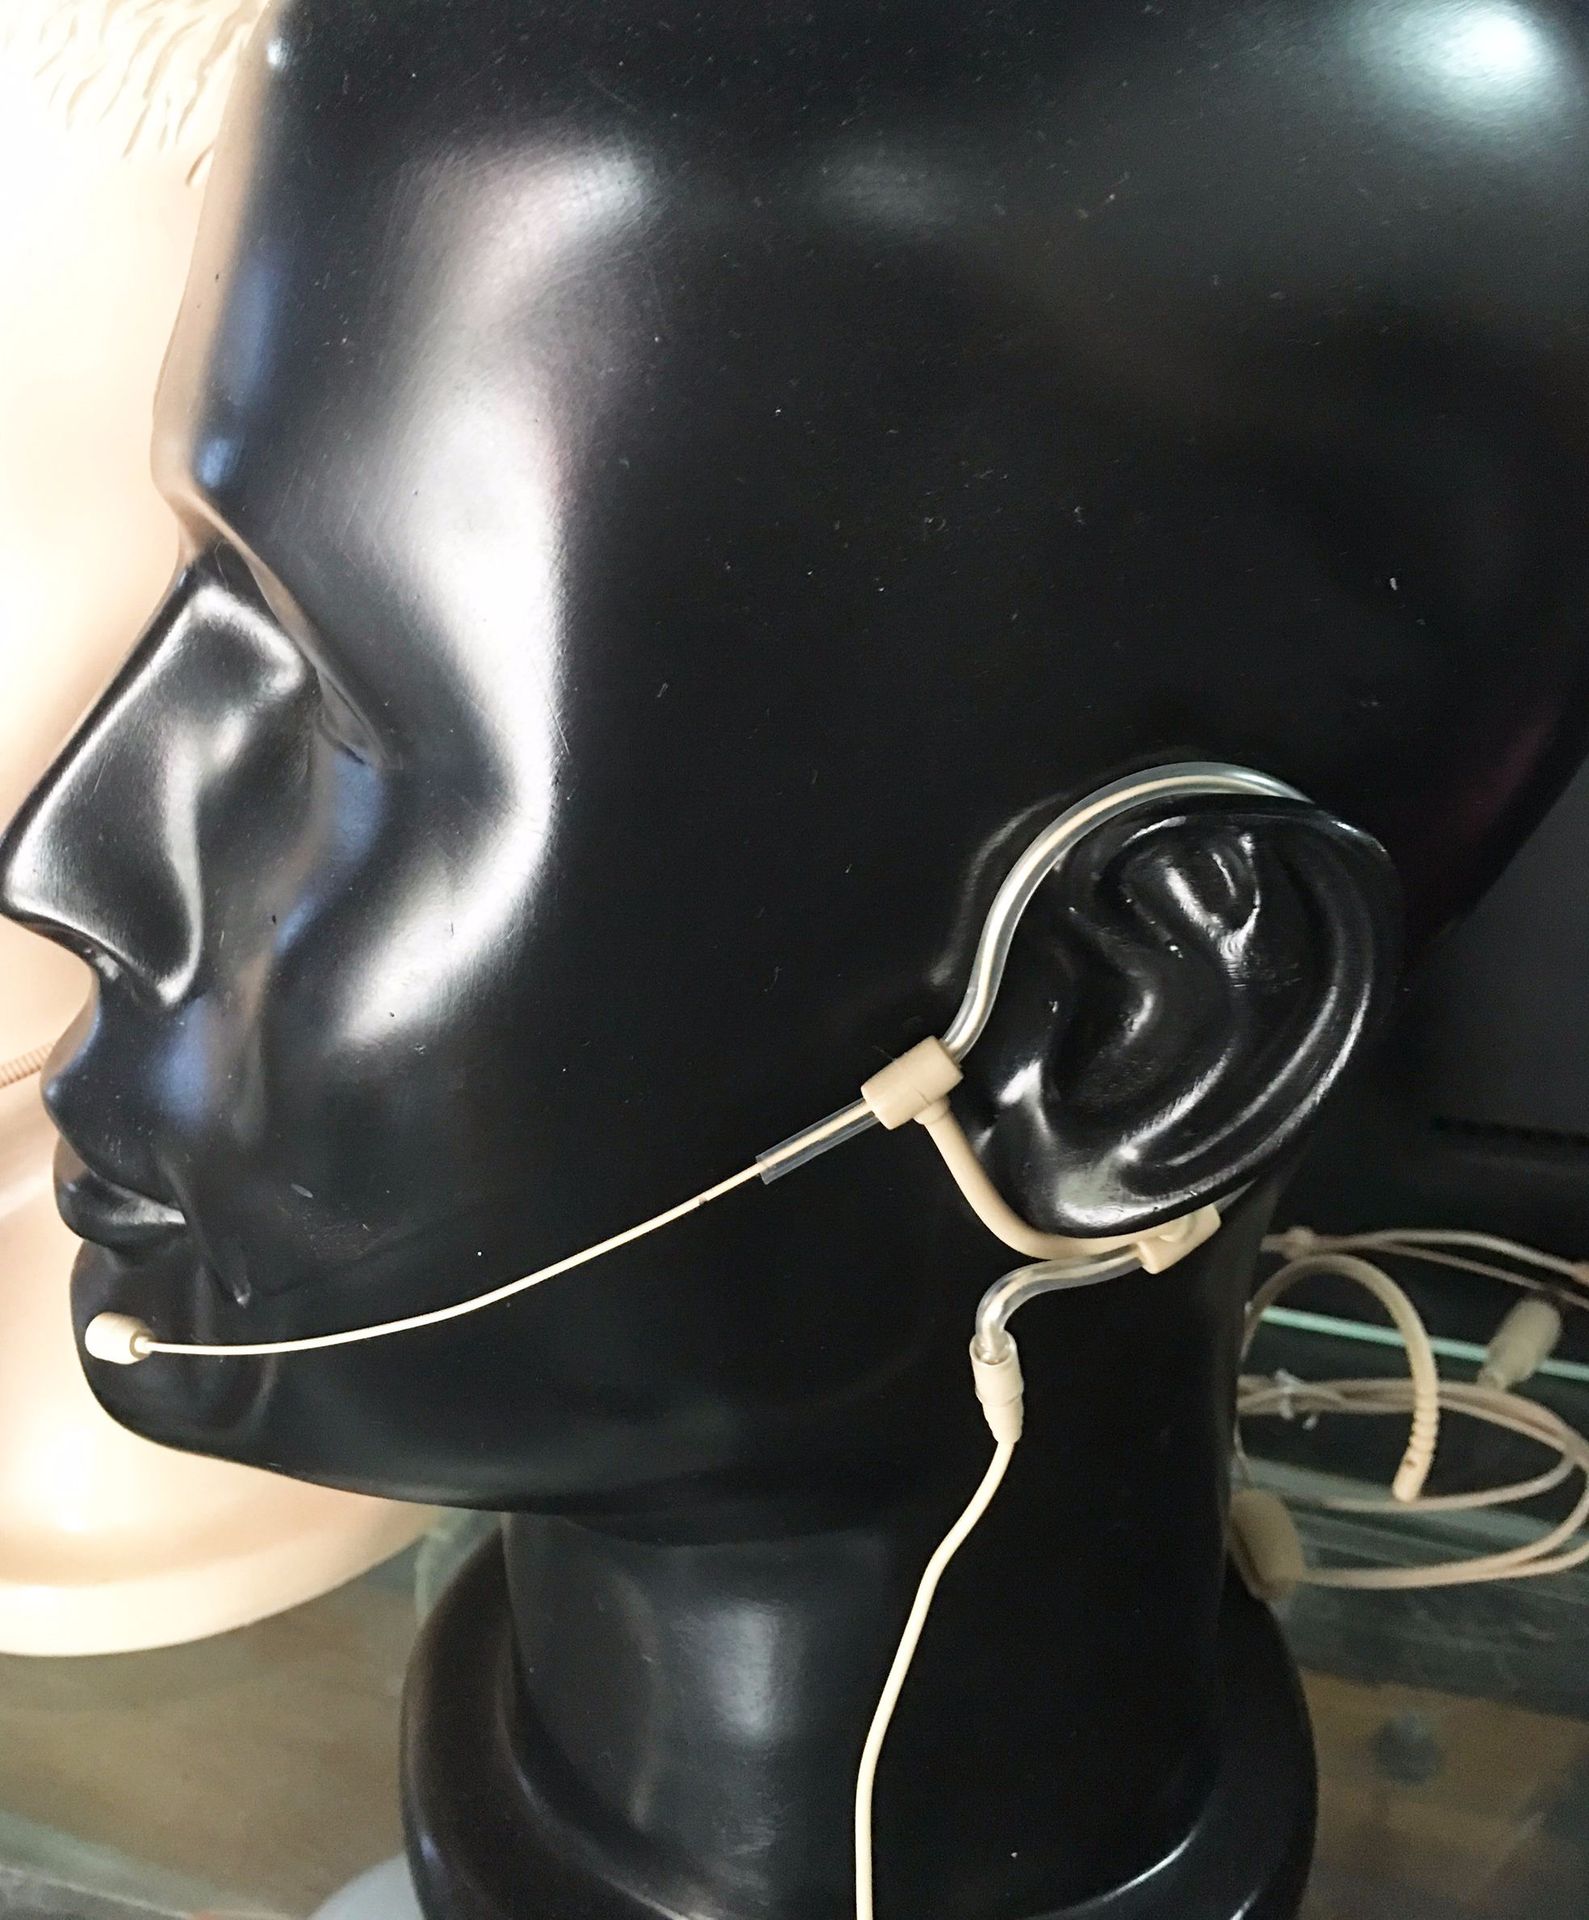 新款 头戴式无线蓝牙耳麦 智能手机通话立体声音乐蓝牙耳机 批发-阿里巴巴